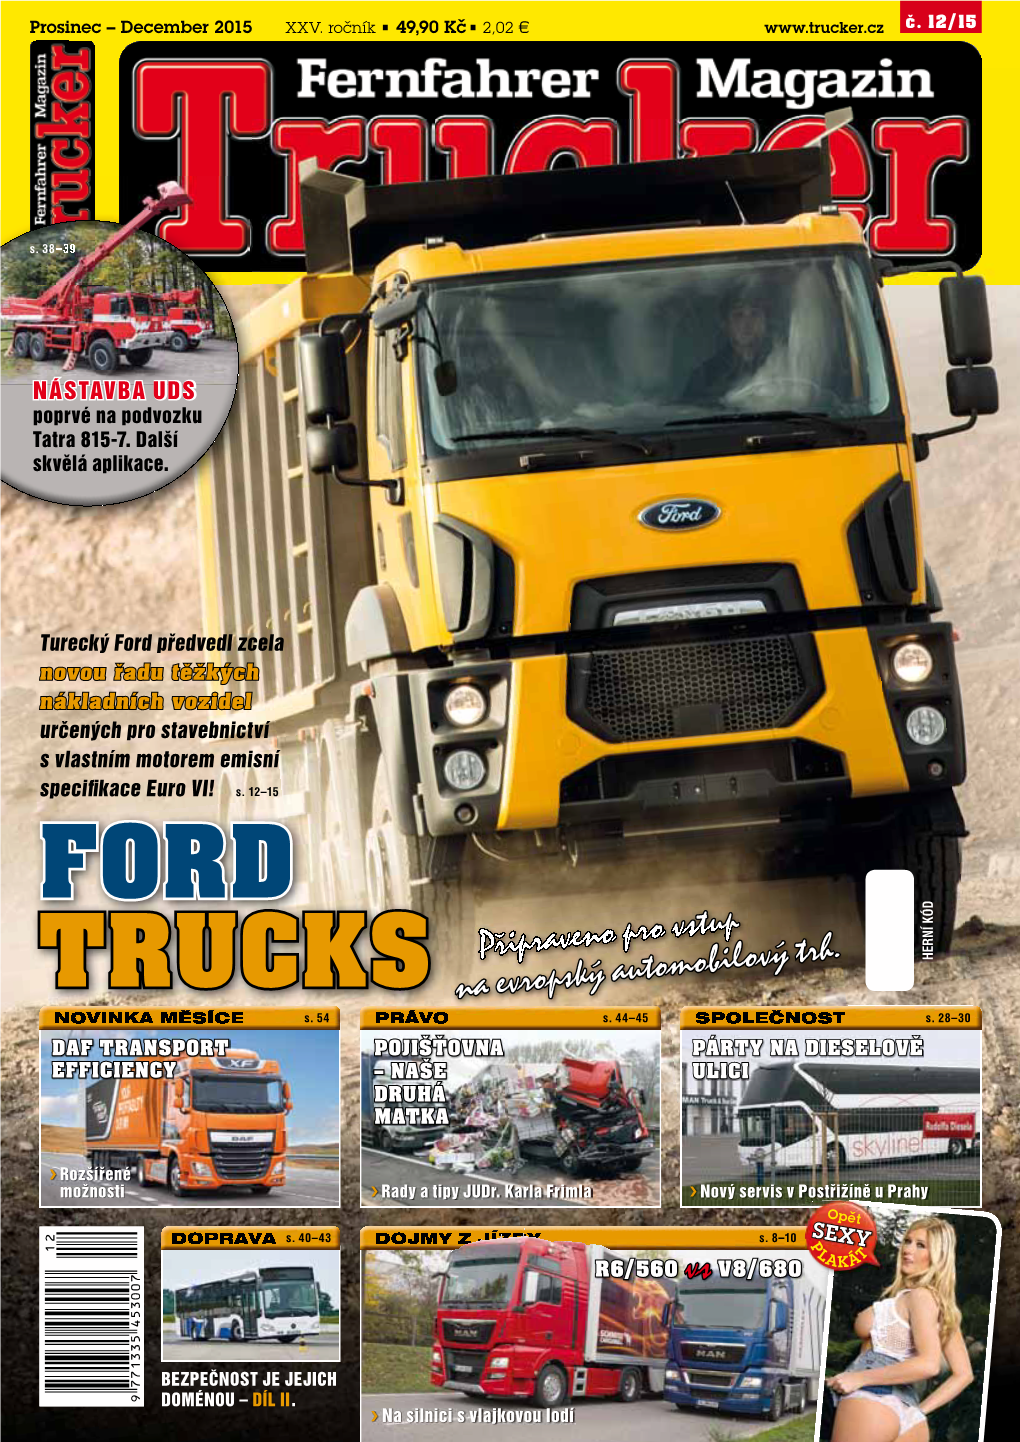 Ford Trucks Cargo Construction Prostorný Víceúče- Na Populární Třetí Zcela Nová Modelová Řada Stavebních Vozi- Lový Funkční Vůz